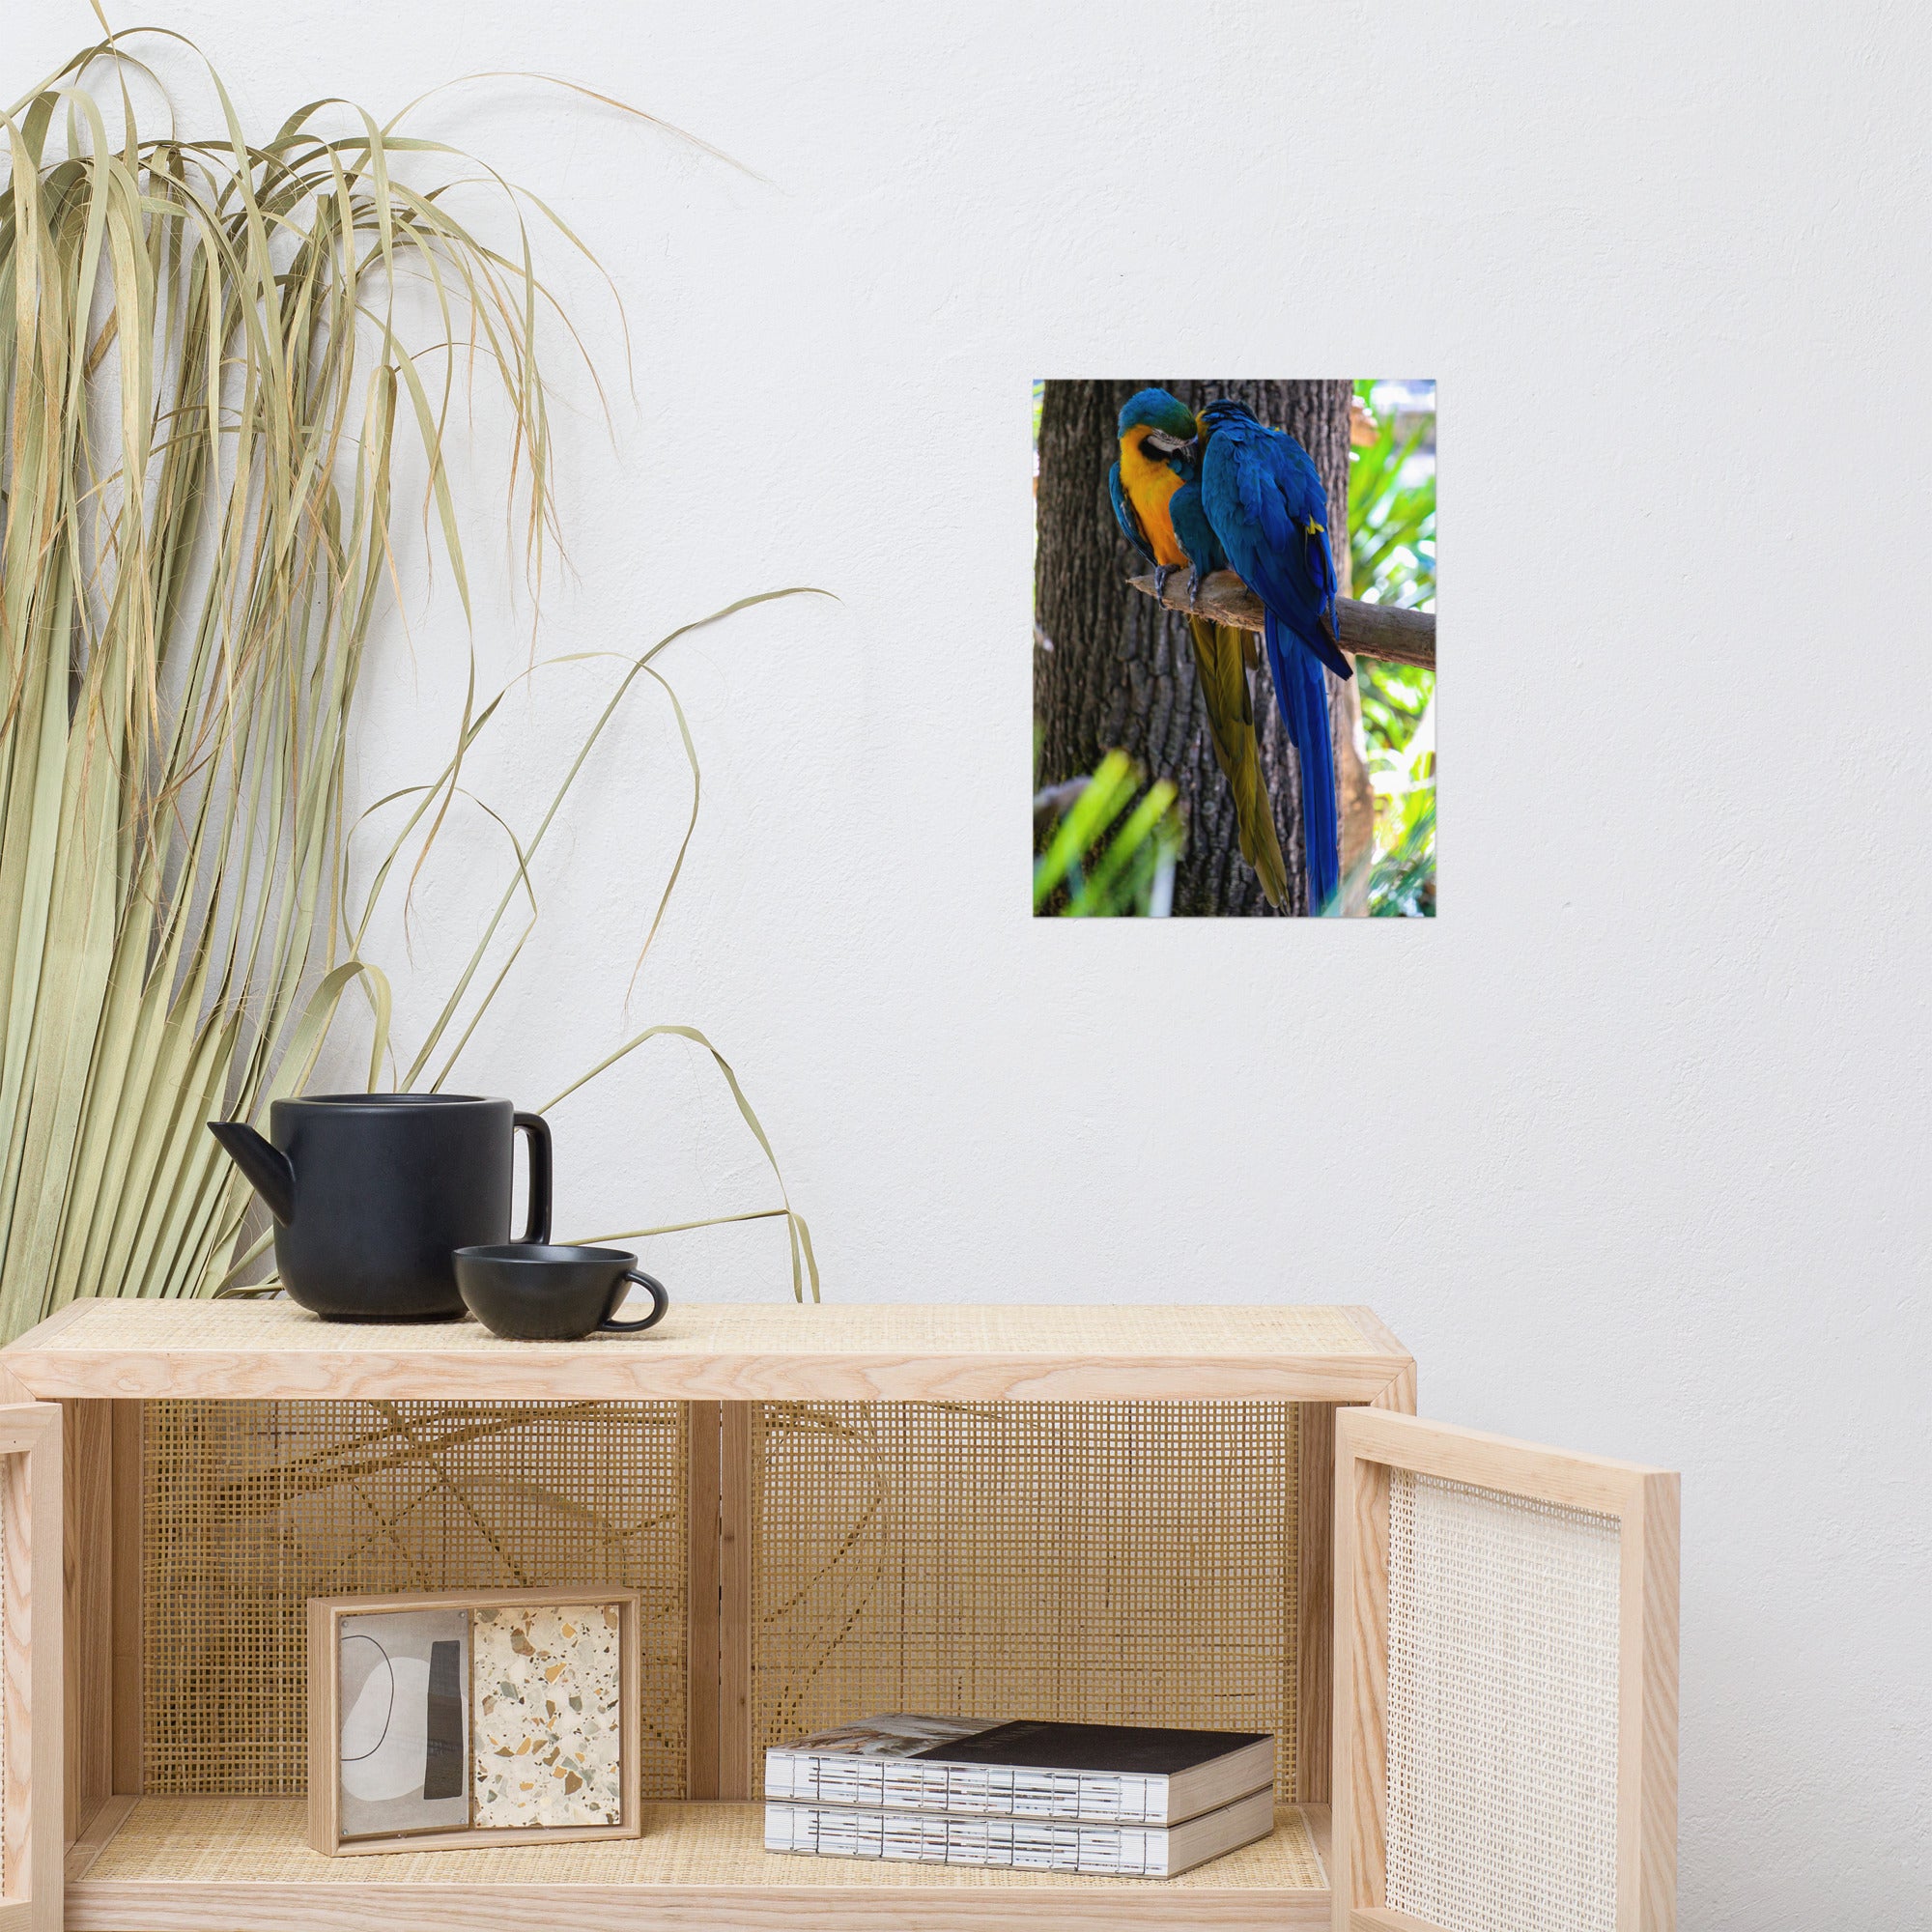 Photographie 'L'Étreinte' par Hadrien Geraci, capturant un moment tendre entre deux Ara bleus sur une branche.